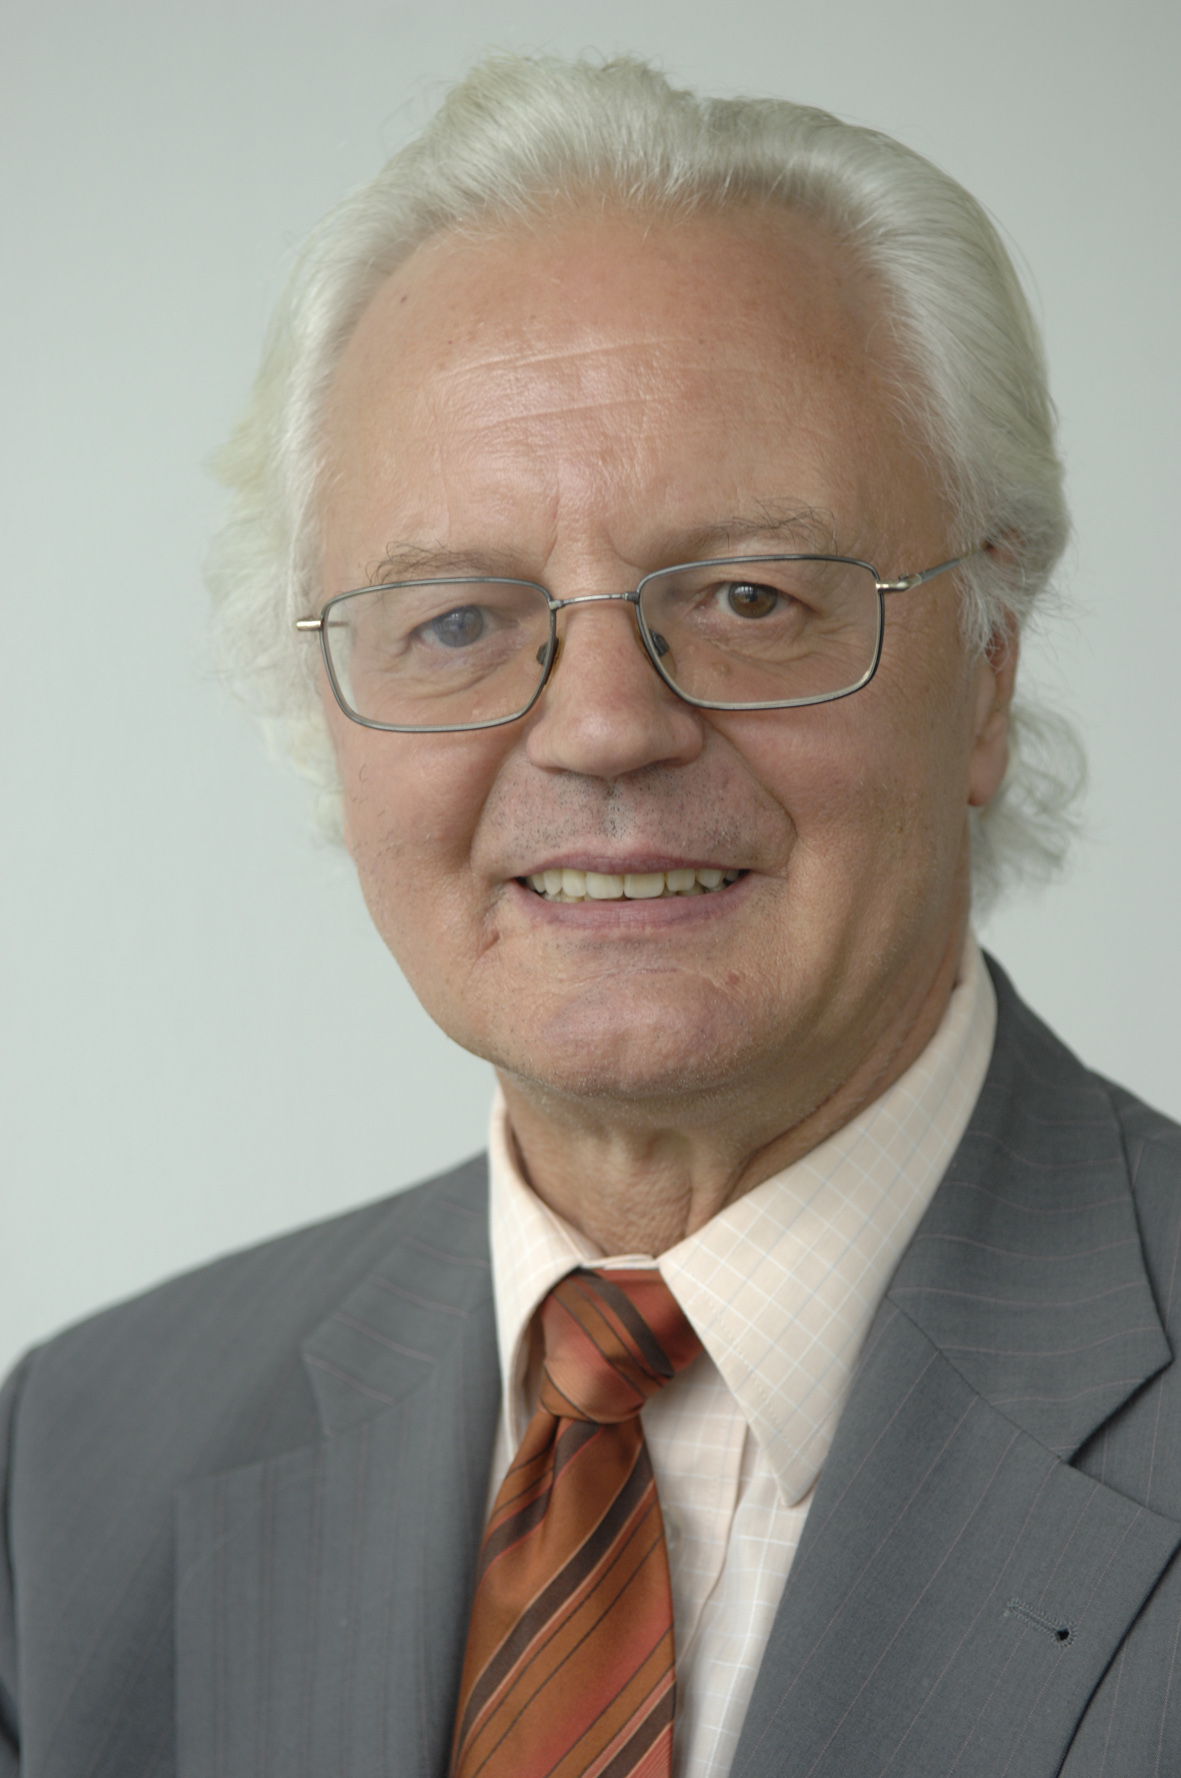 Hannes Weindlmaier, Technische Universität München